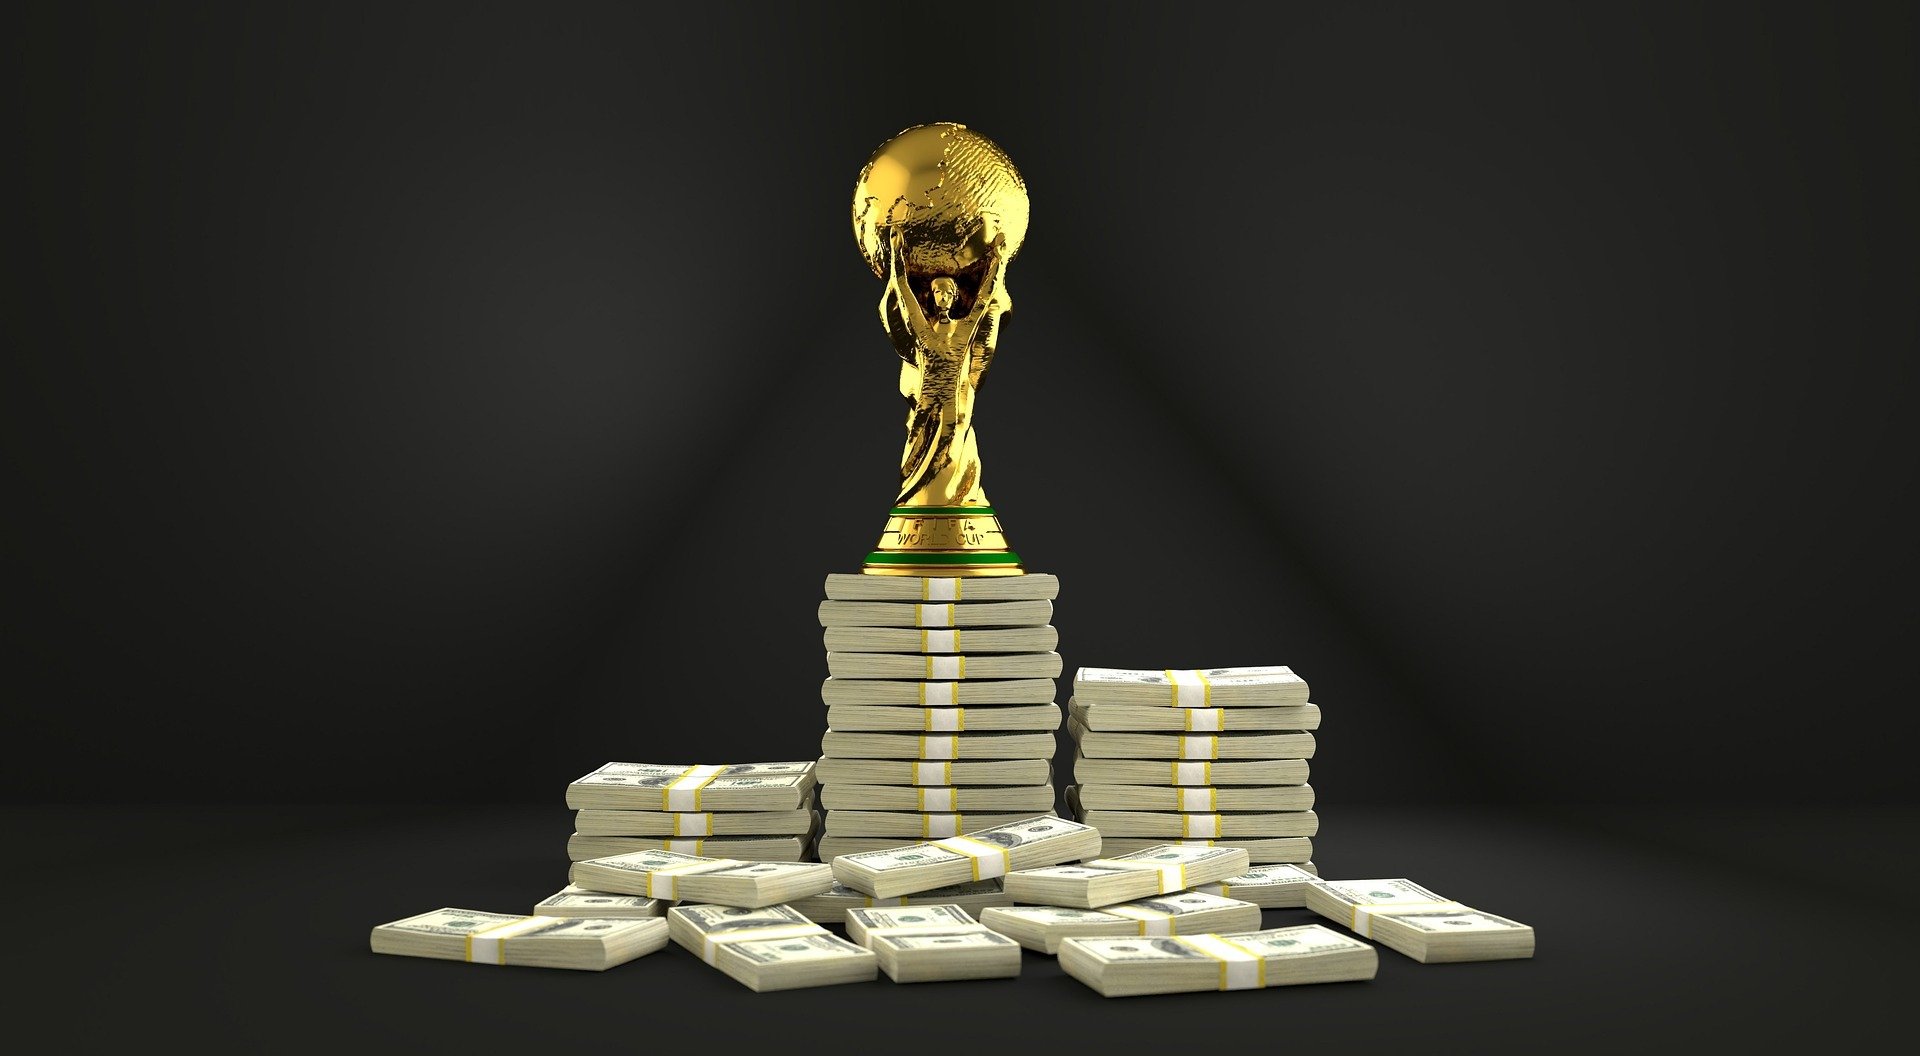 O valor de mercado da Seleção Brasileira em 2022 credencia o time de Tite como um dos mais fortes na Copa do Mundo. Veja os valores.